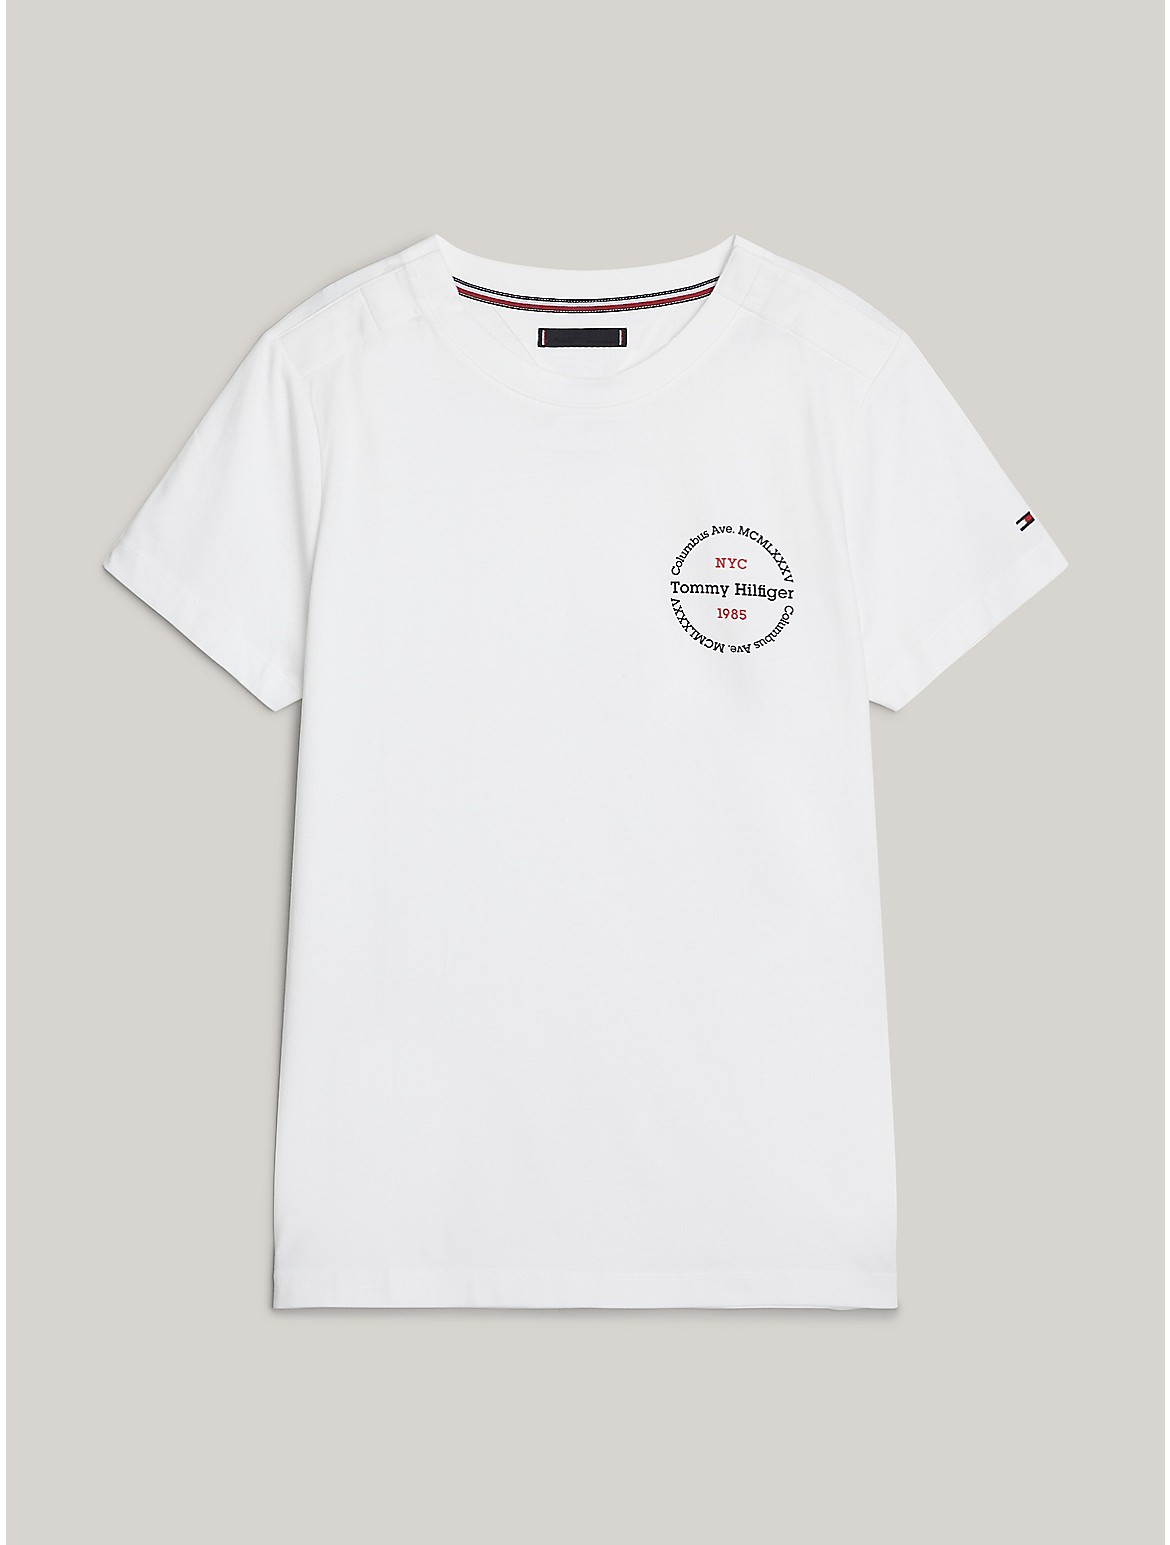 Tommy Hilfiger Men's Slim Fit Round Logo T-Shirt